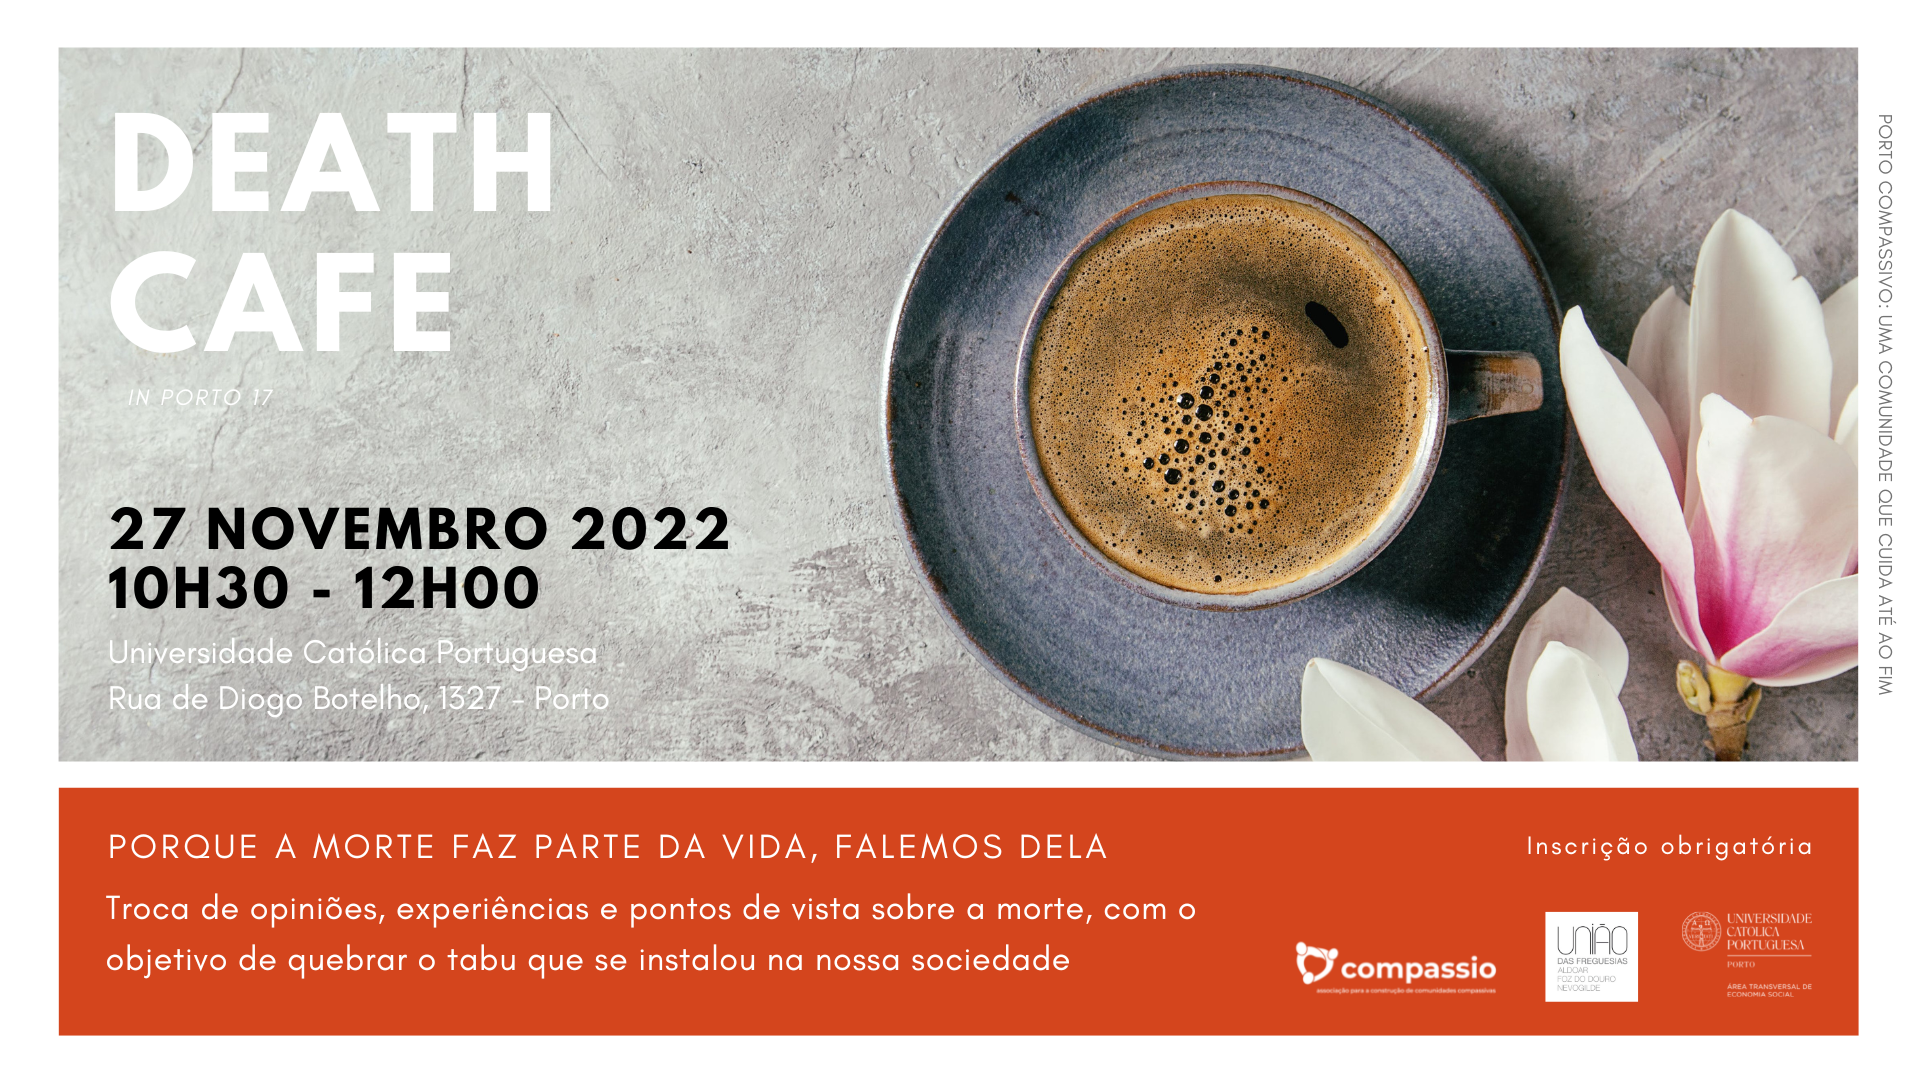 Death cafe in Porto 17 - Presencial